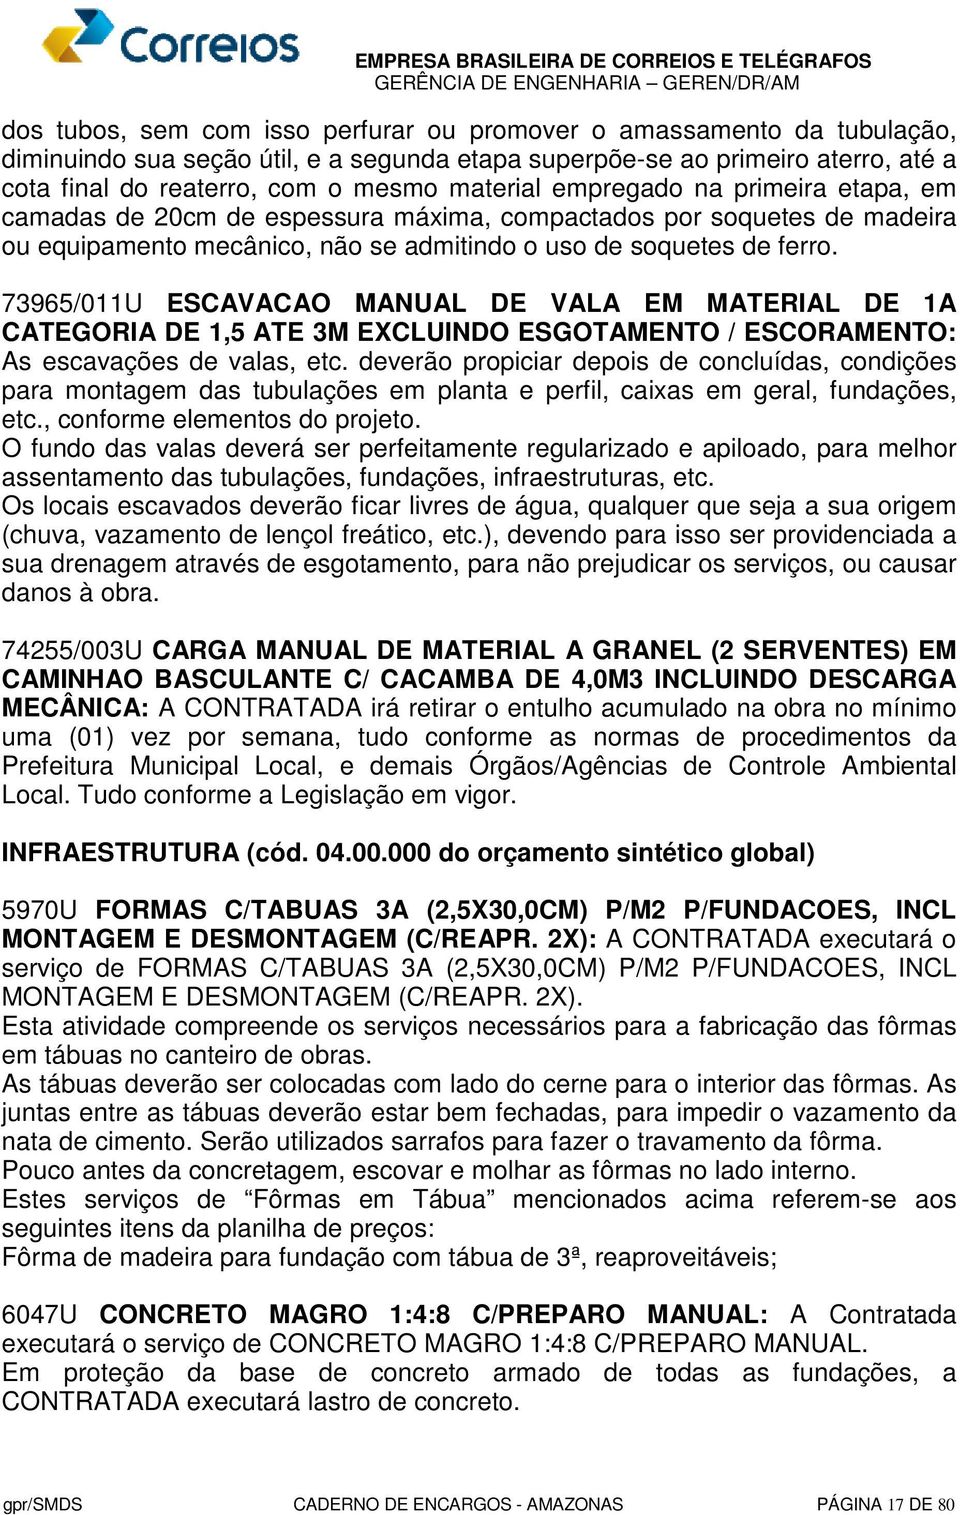 73965/011U ESCAVACAO MANUAL DE VALA EM MATERIAL DE 1A CATEGORIA DE 1,5 ATE 3M EXCLUINDO ESGOTAMENTO / ESCORAMENTO: As escavações de valas, etc.